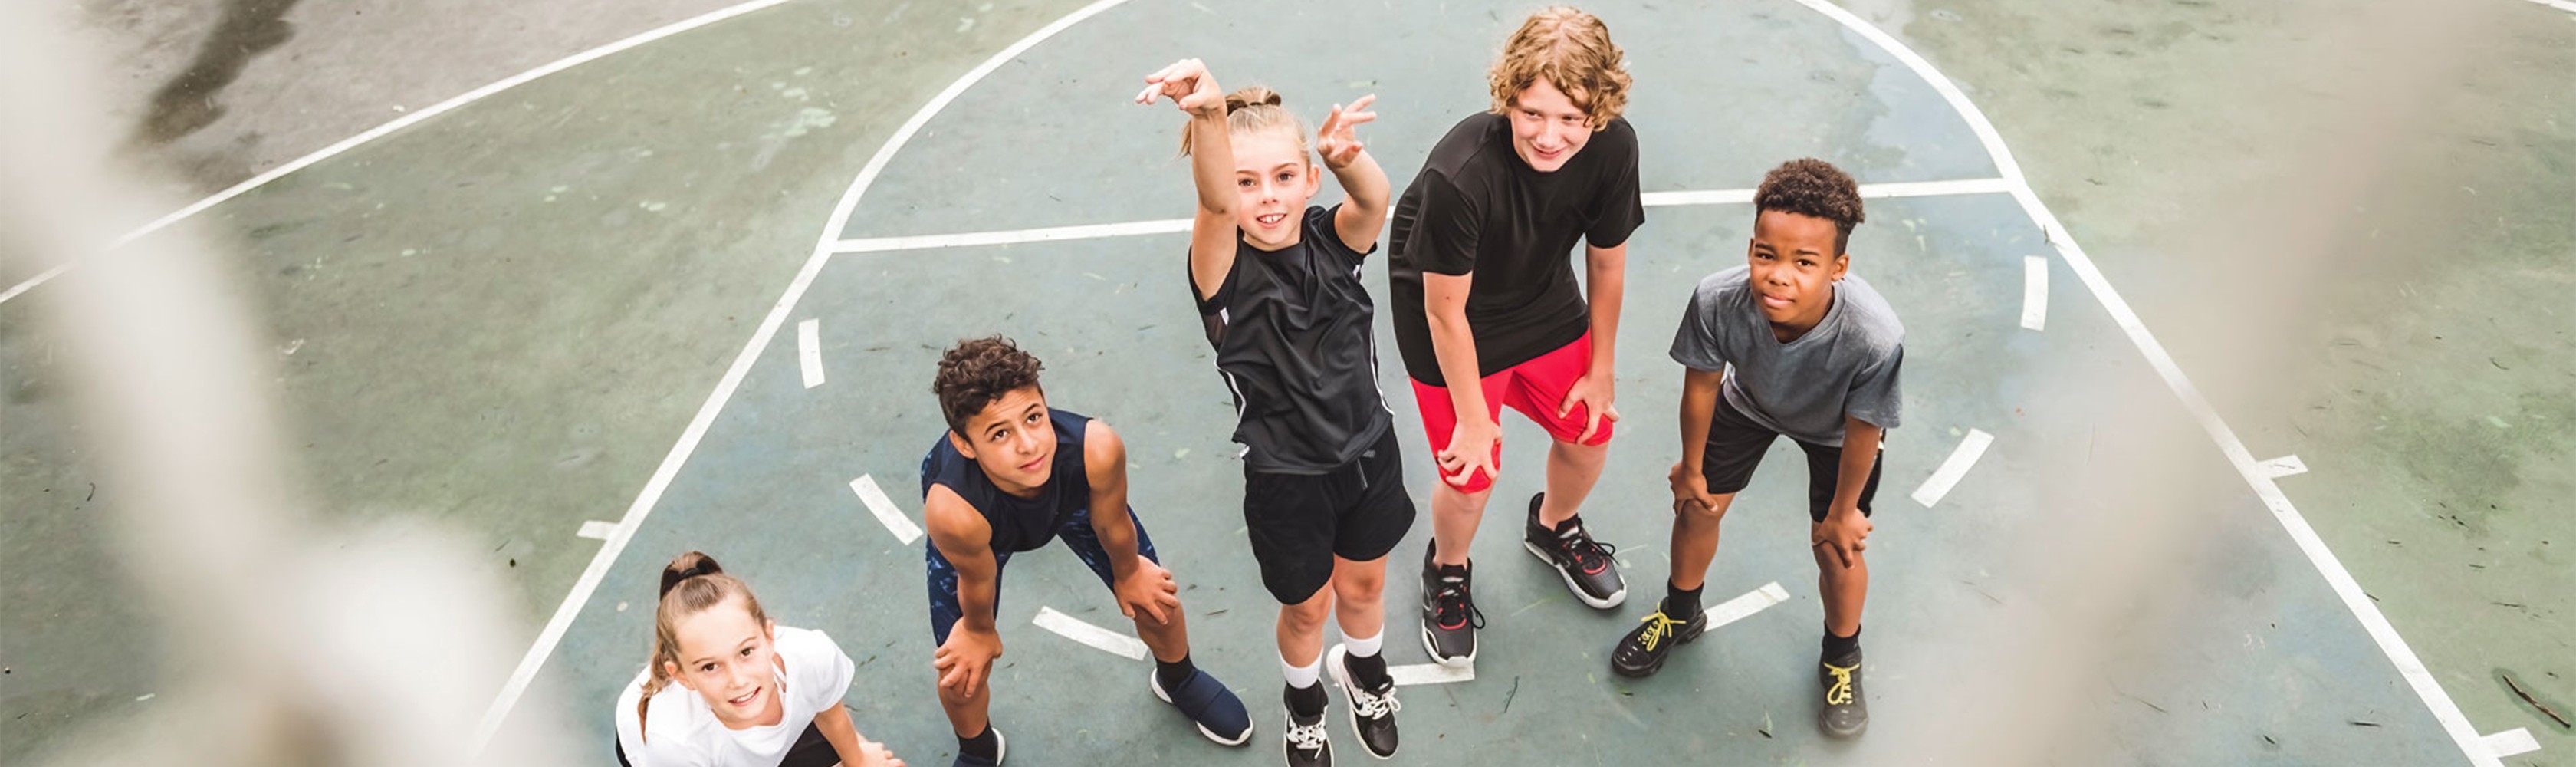 Les enfants jouent sur le terrain de basket-ball et rêvent d'une carrière sportive de haut niveau.